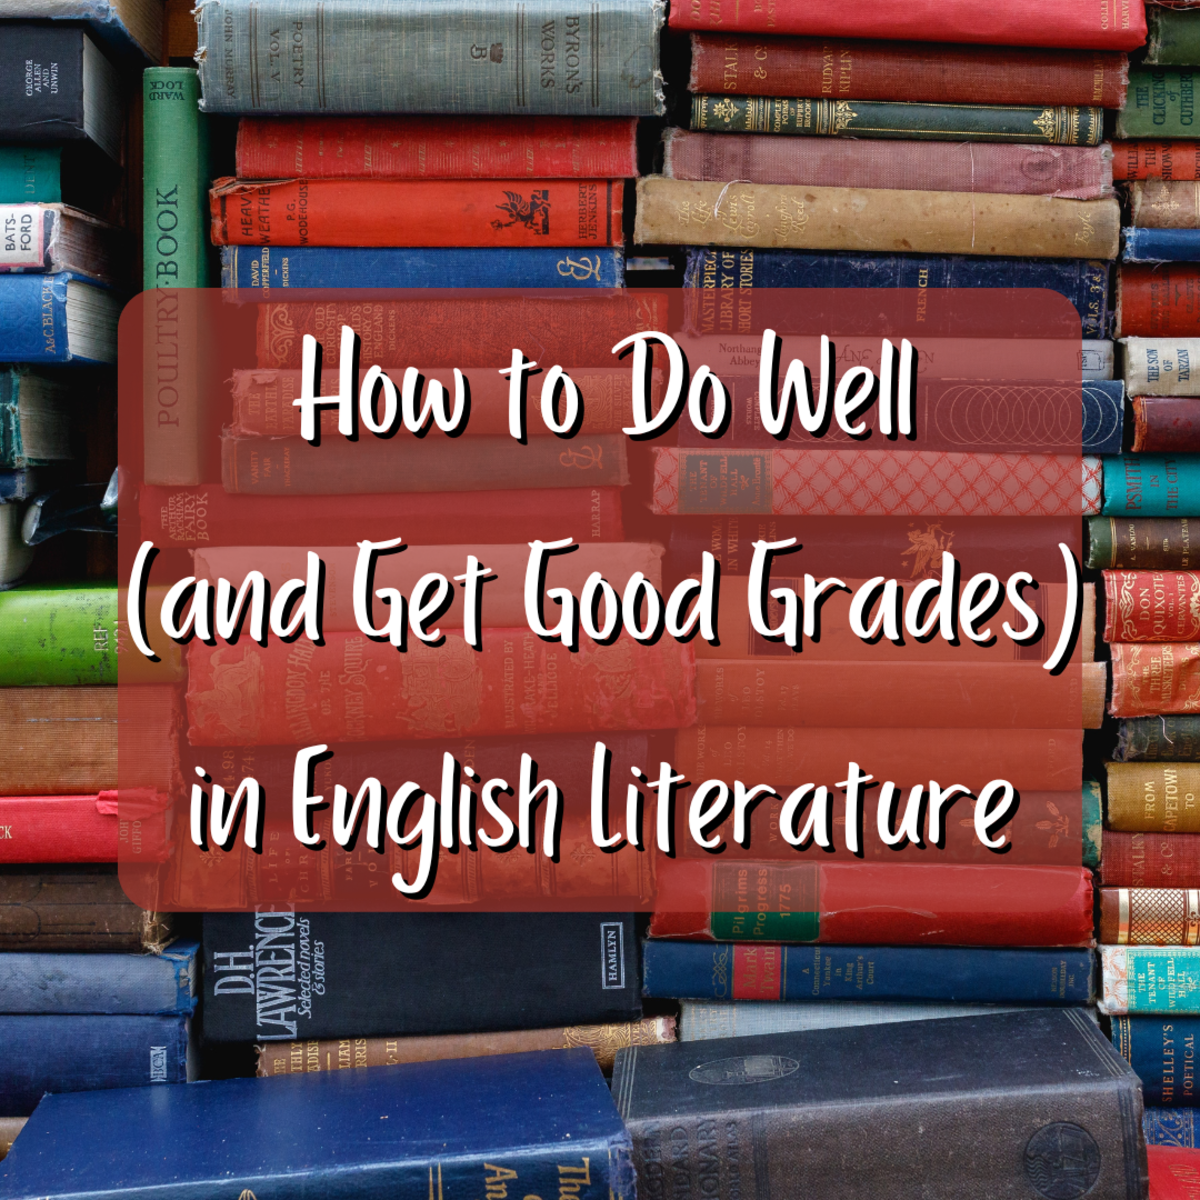 下面是11条帮助你在英语文学课程中取得优异成绩的建议。请坚持到最后，以帮助理解莎士比亚的语言。